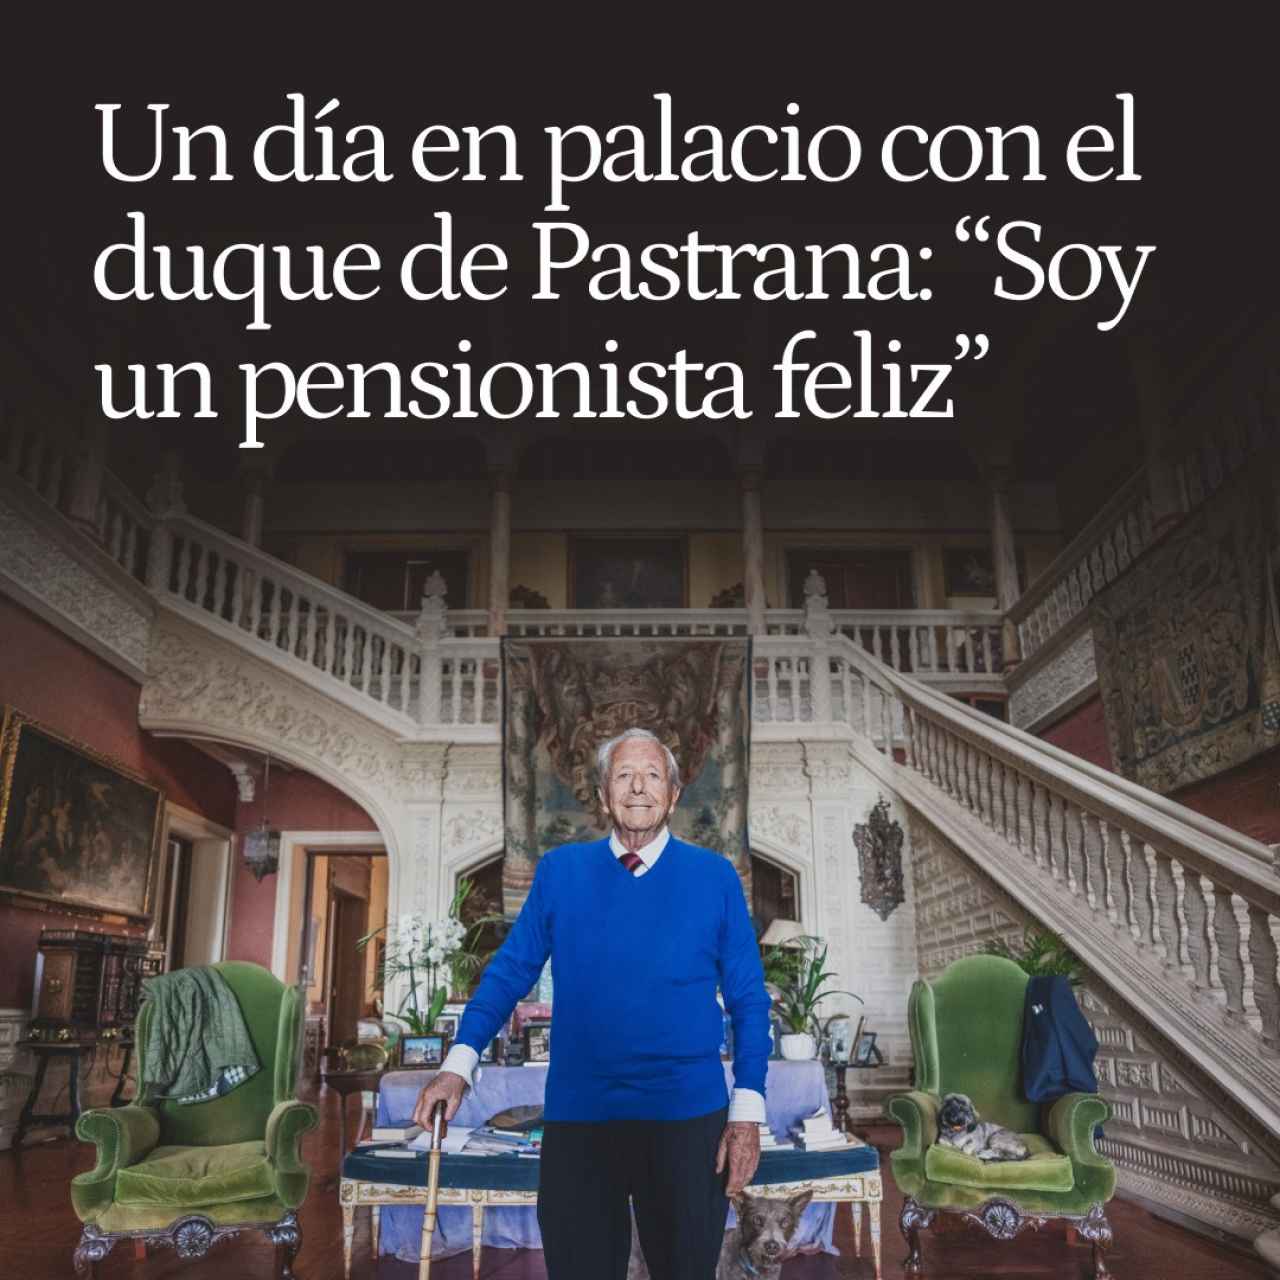 Un día en palacio con el duque de Pastrana, el noble que cotizó 44 años y cazó con Juan Carlos y Franco: "Soy un pensionista feliz"